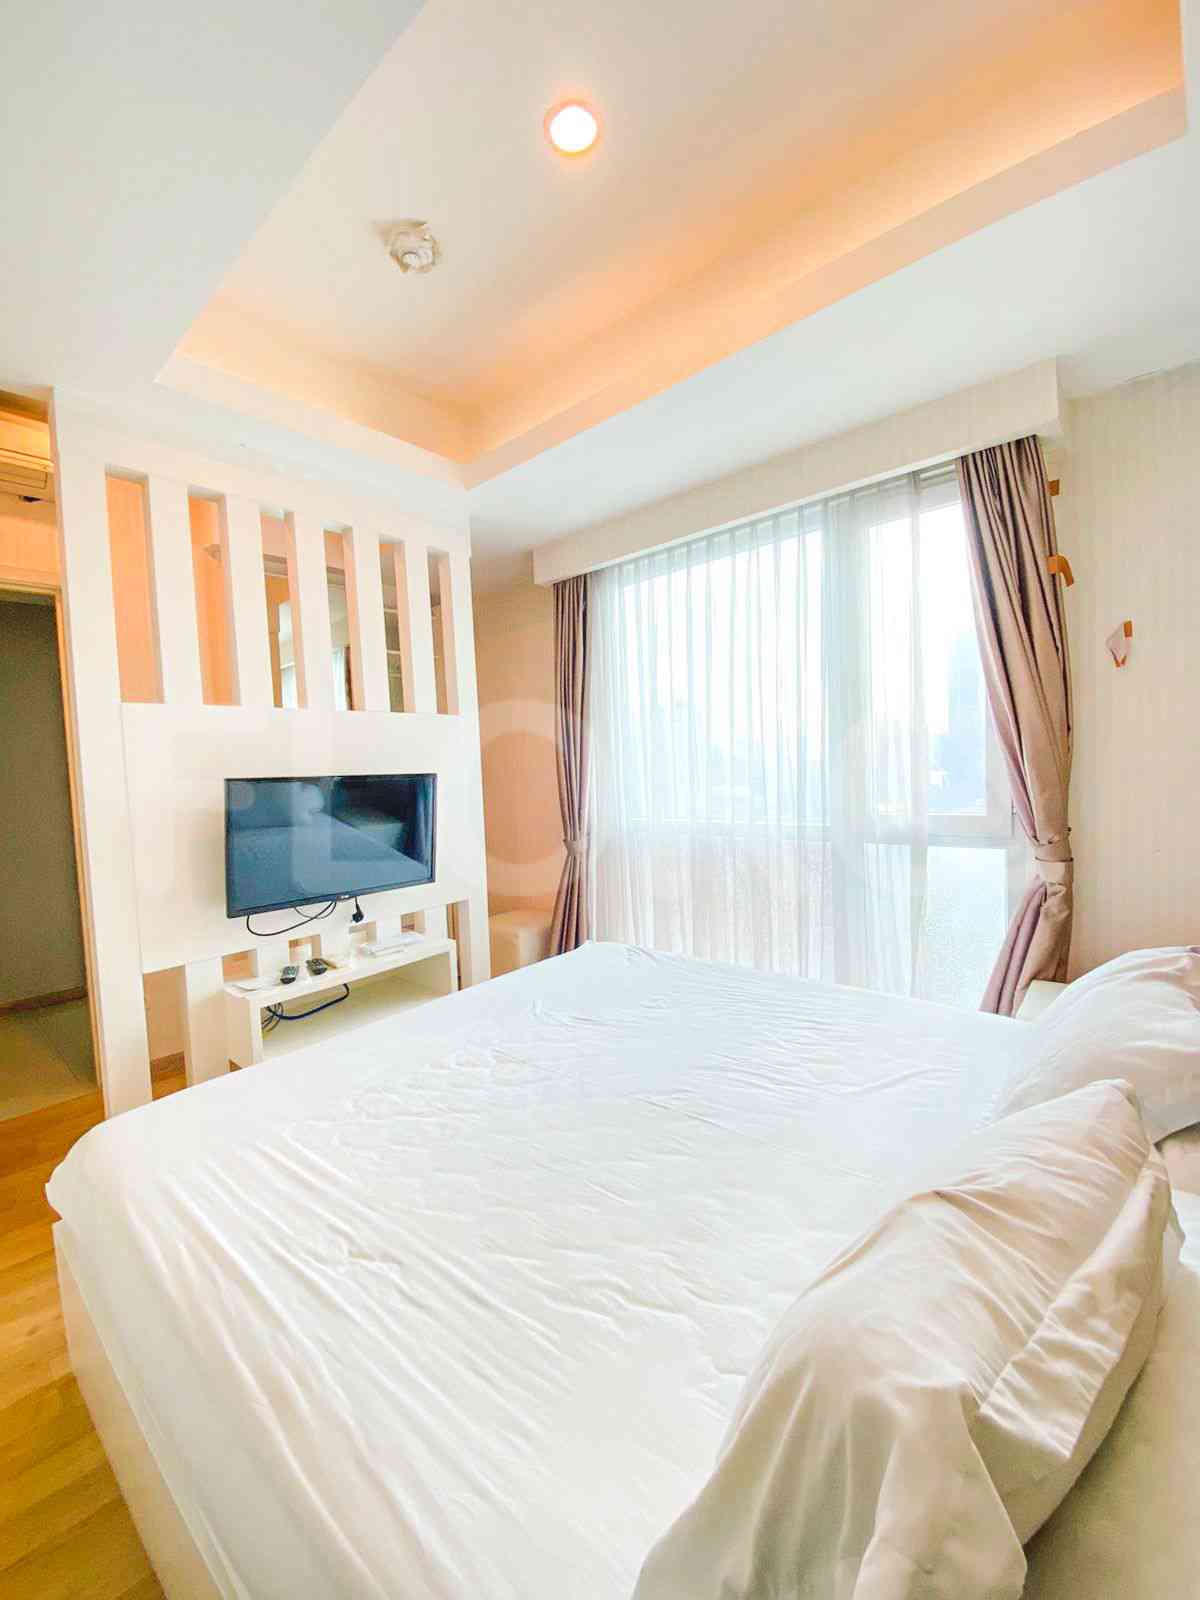 3 Bedroom on 17th Floor for Rent in Casa Grande - fte656 2